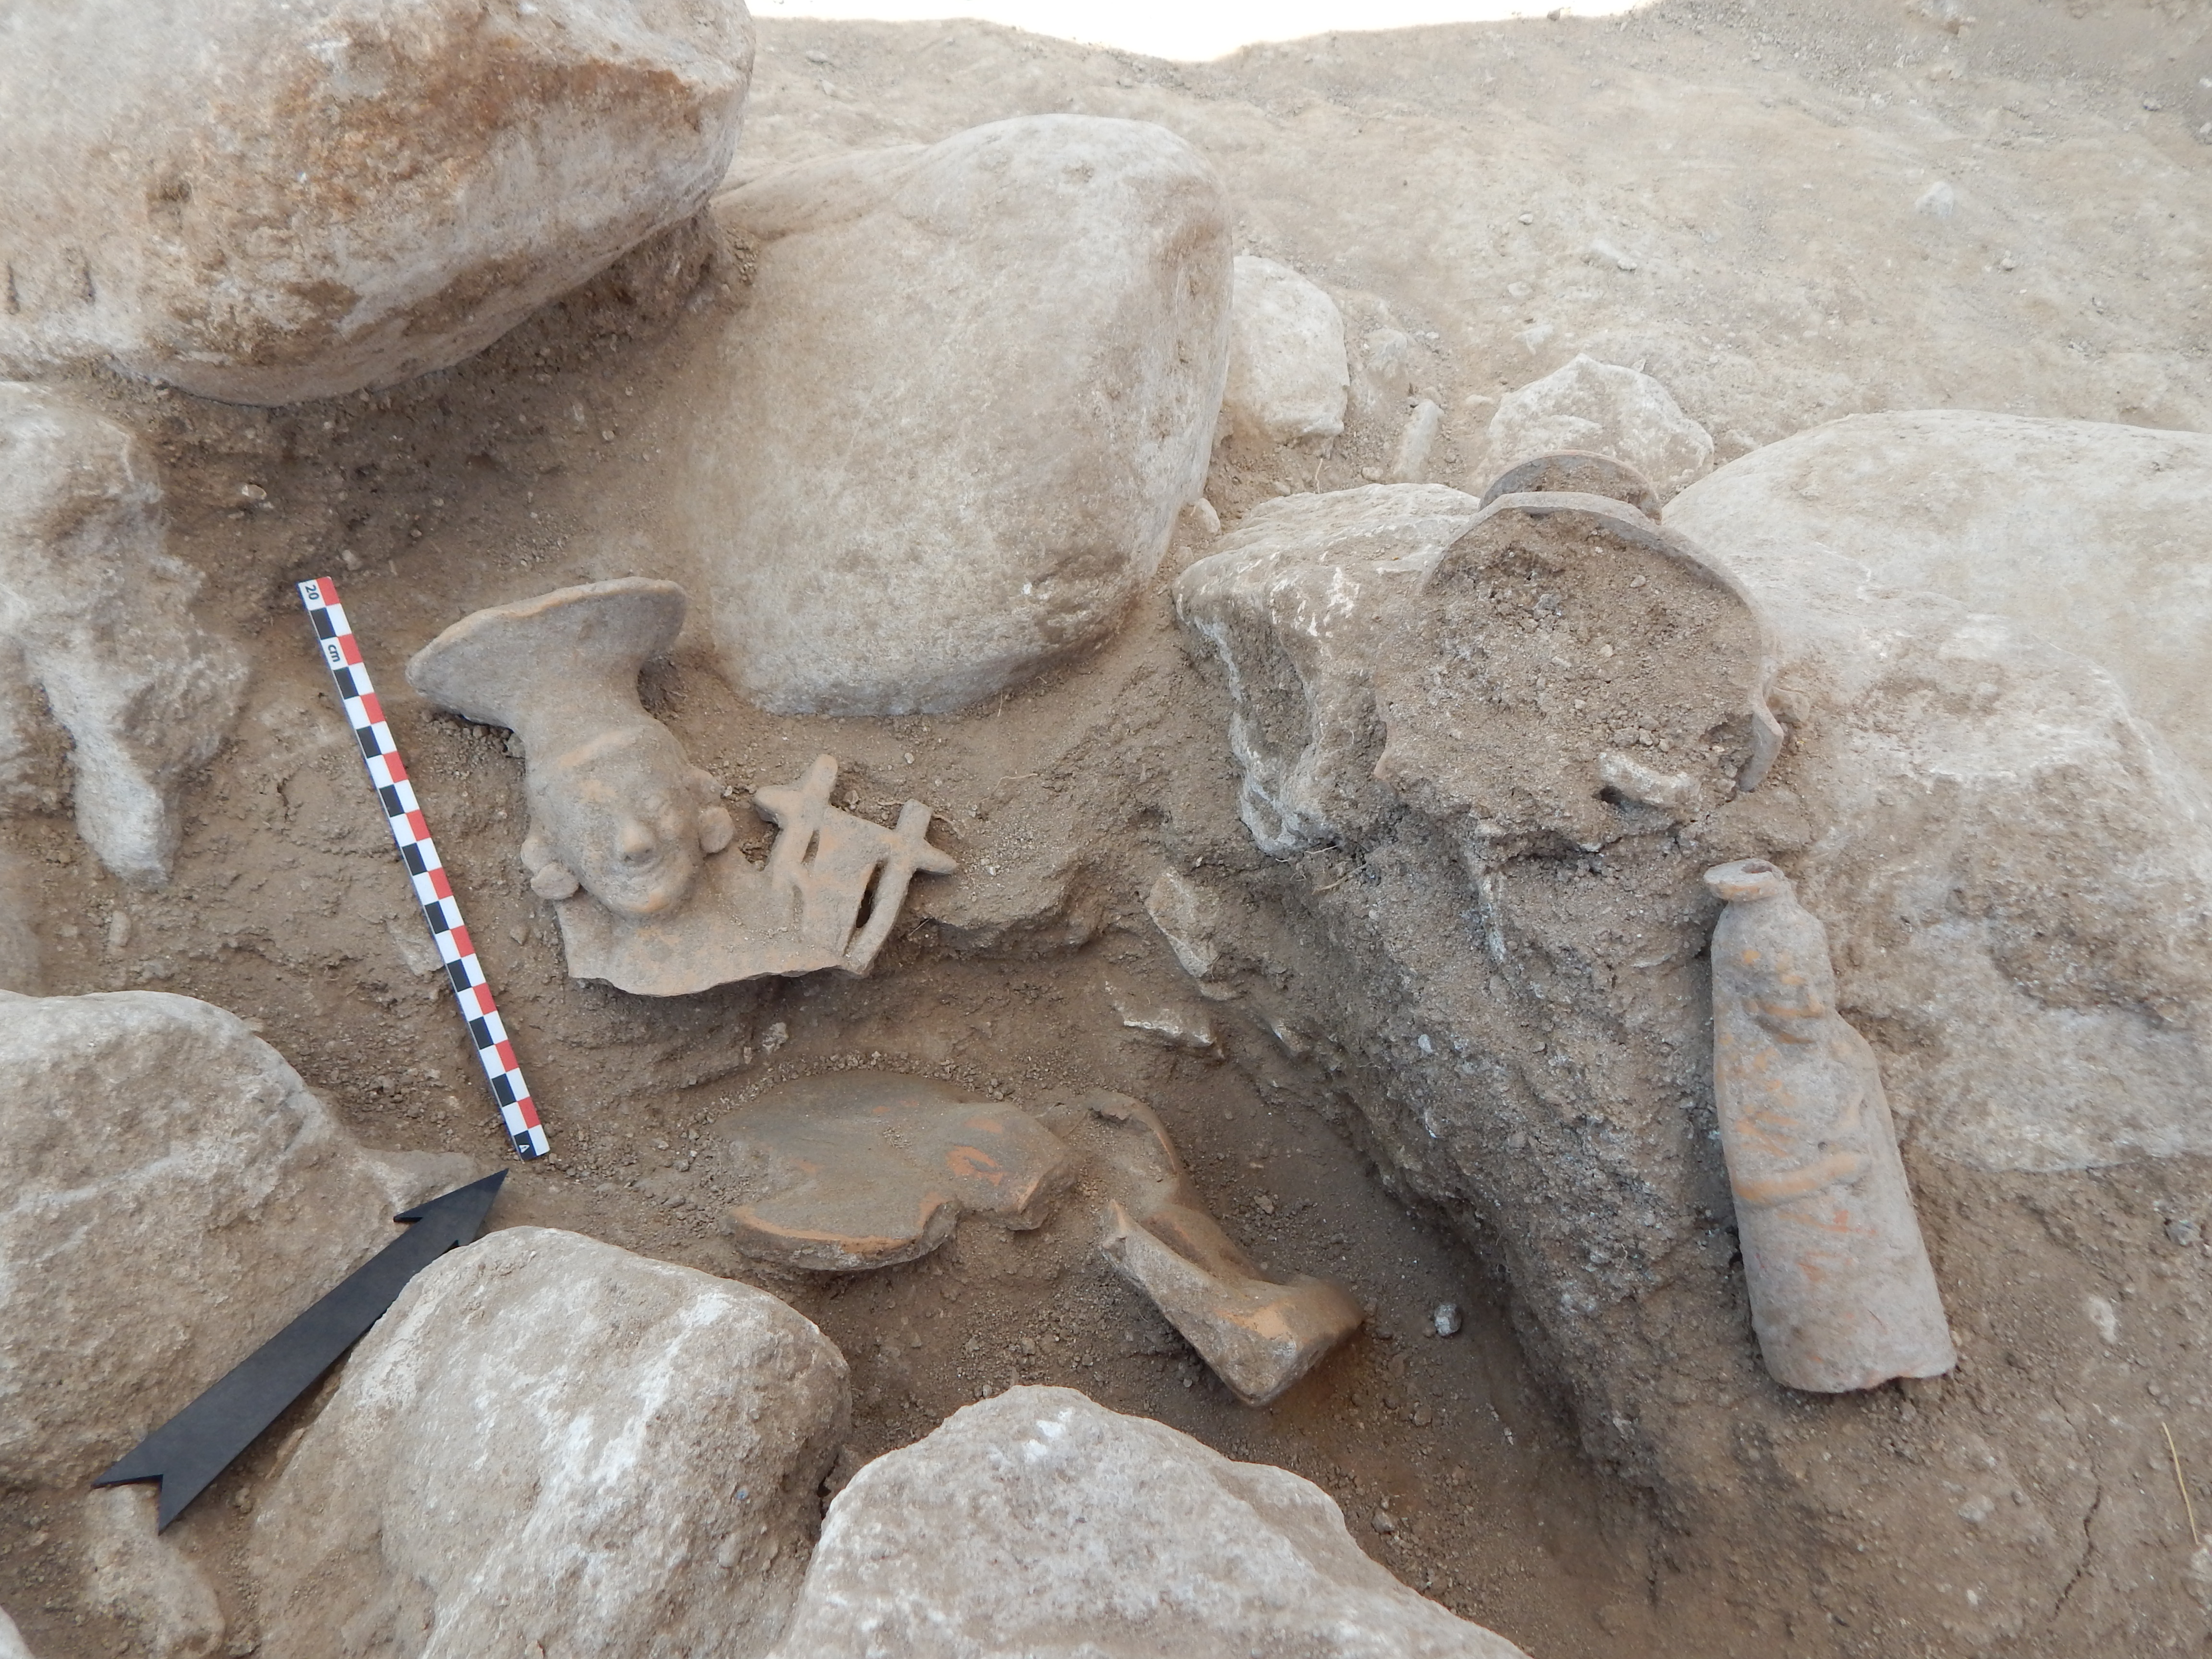 Σημαντικά ευρήματα στον αρχαιολογικό χώρο στην Αχλάδα Φλώρινας